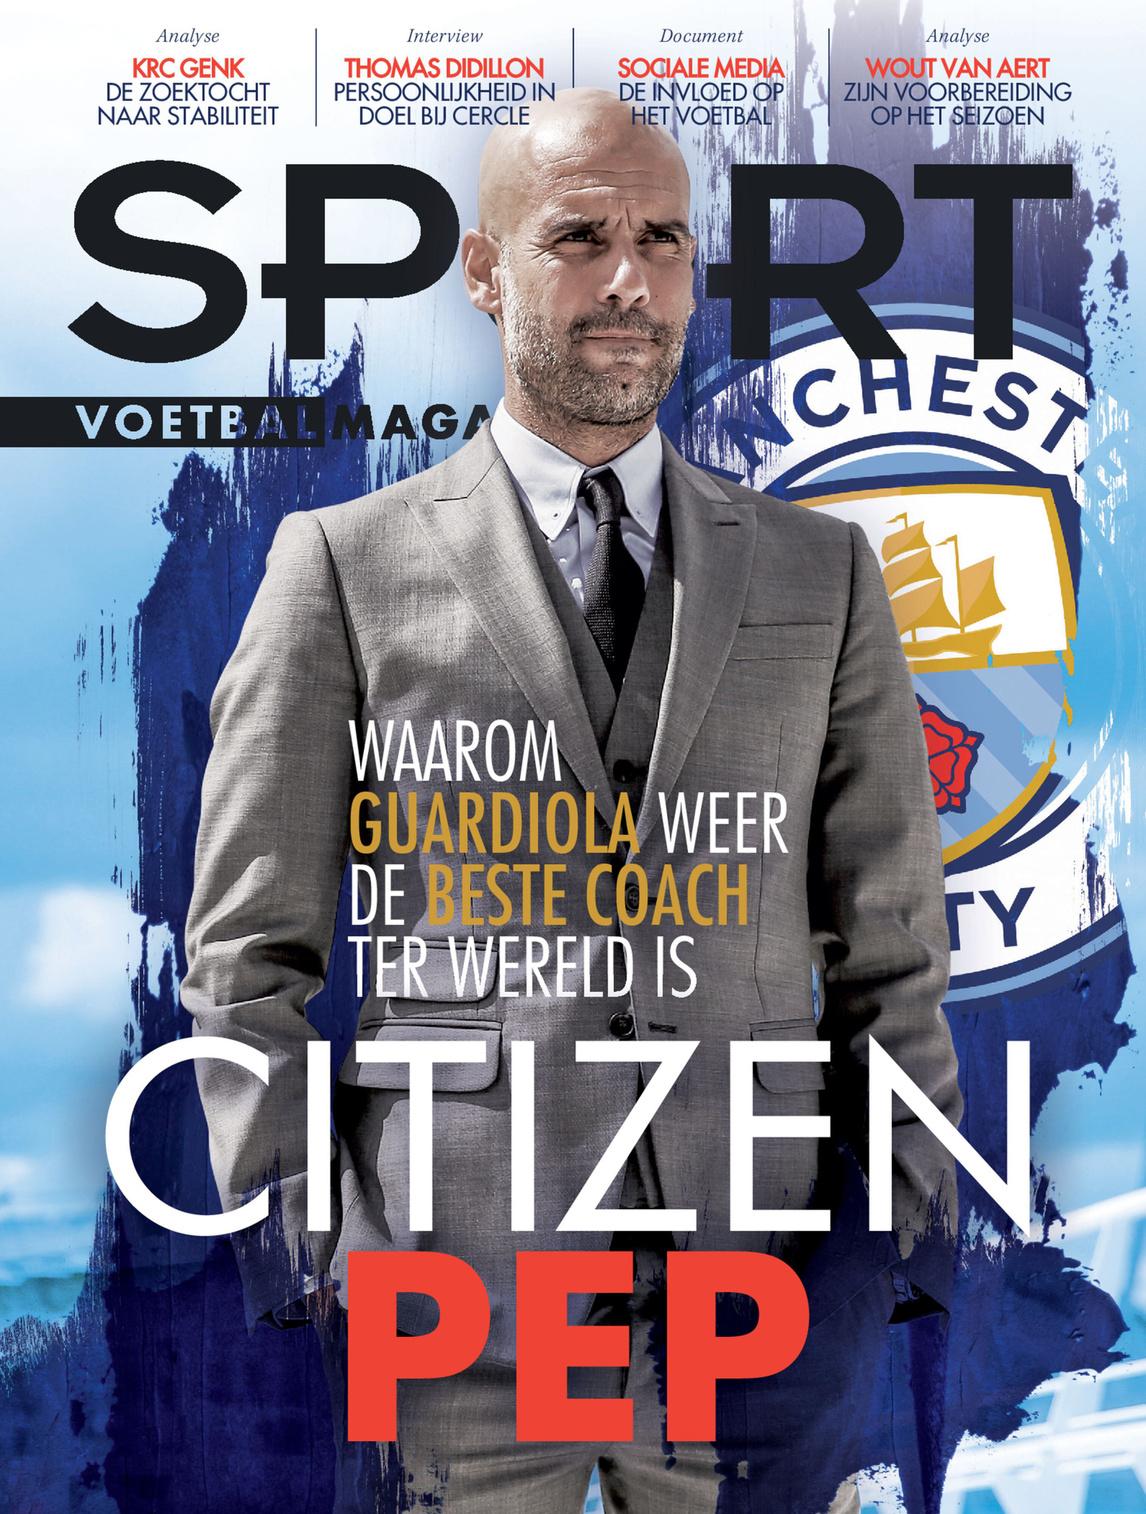 Haal vanaf woensdag 3 maart de nieuwste Sport/Voetbalmagazine in huis.